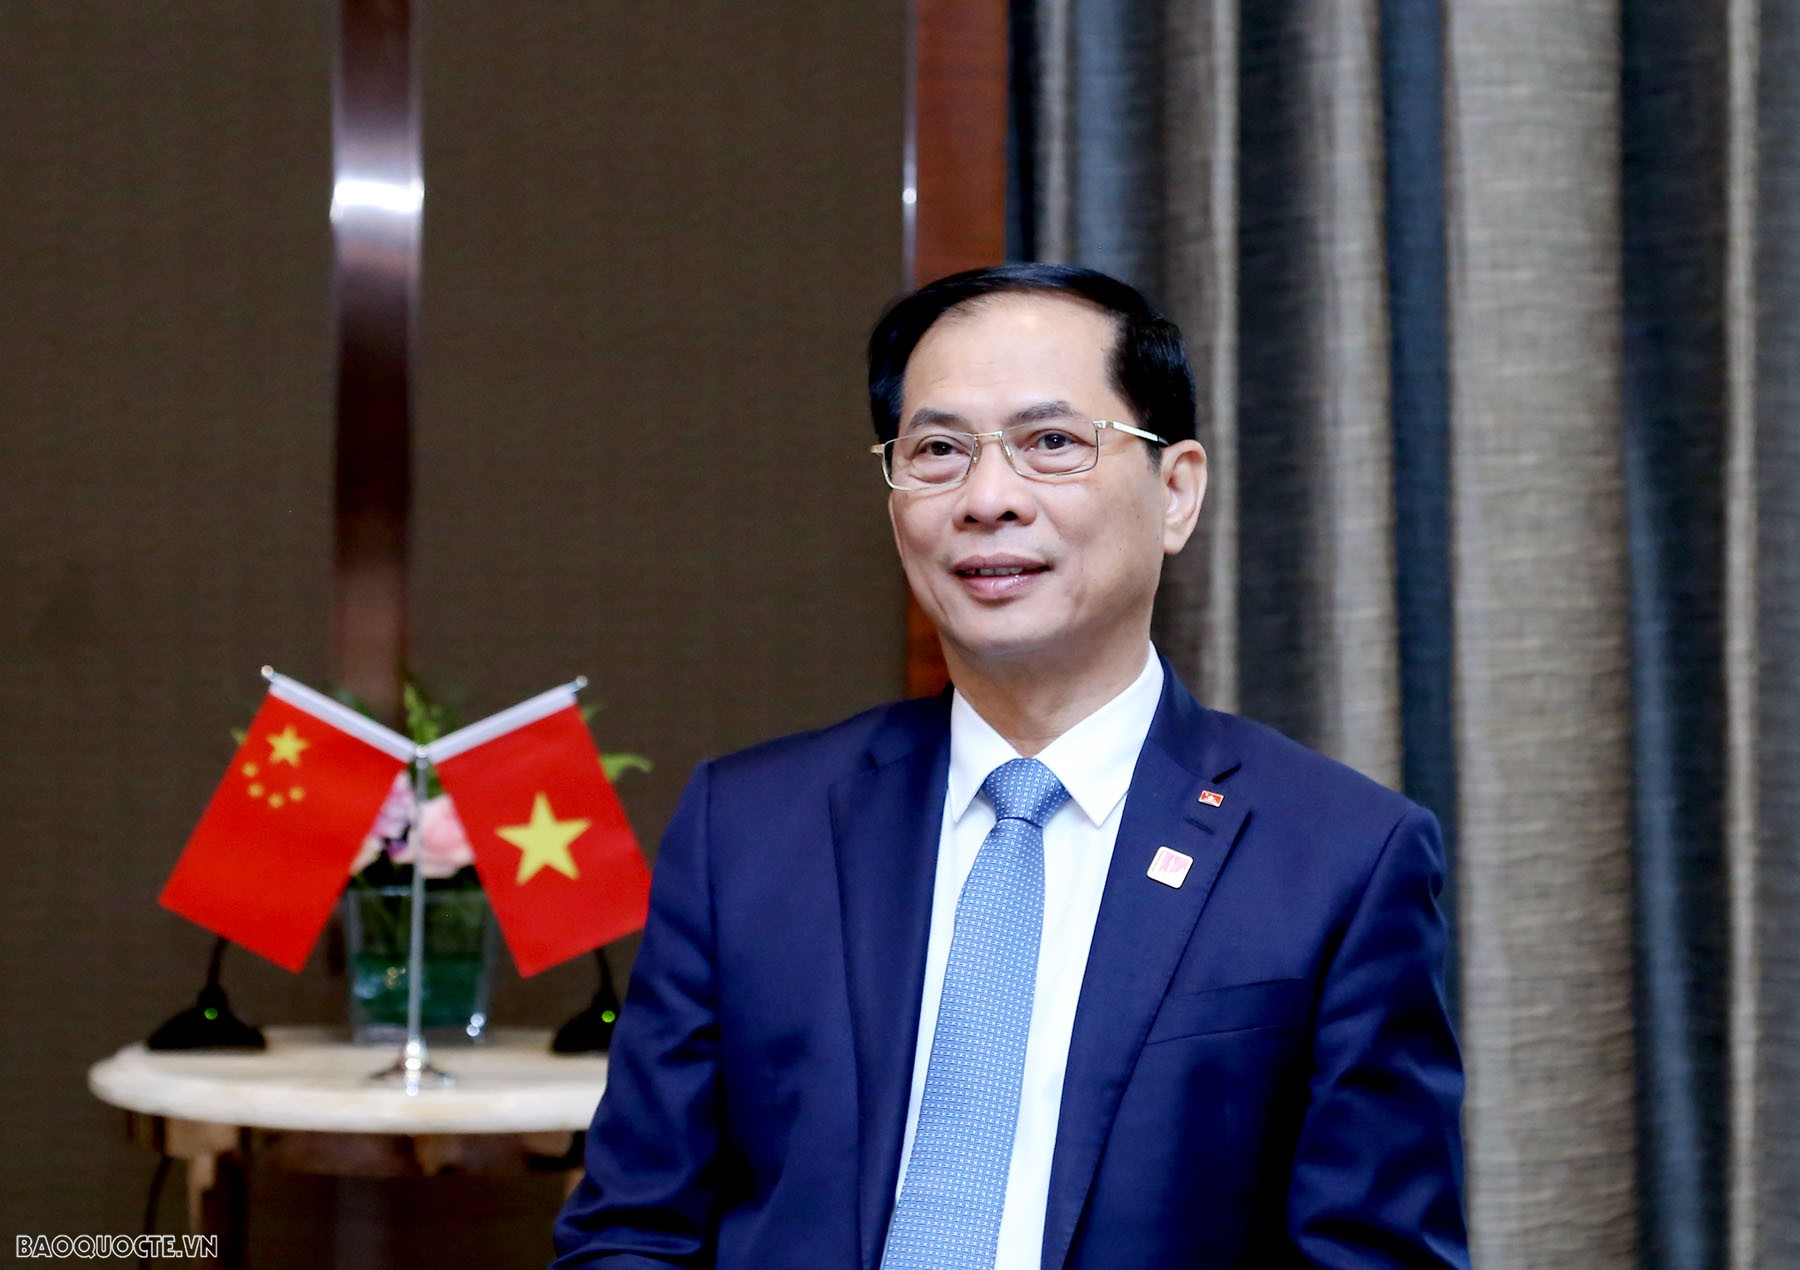 Bộ trưởng Bùi Thanh Sơn trả lời báo chí về chuyến công tác của Thủ tướng Chính phủ tham dự Hội nghị WEF Đại Liên và làm việc tại Trung Quốc